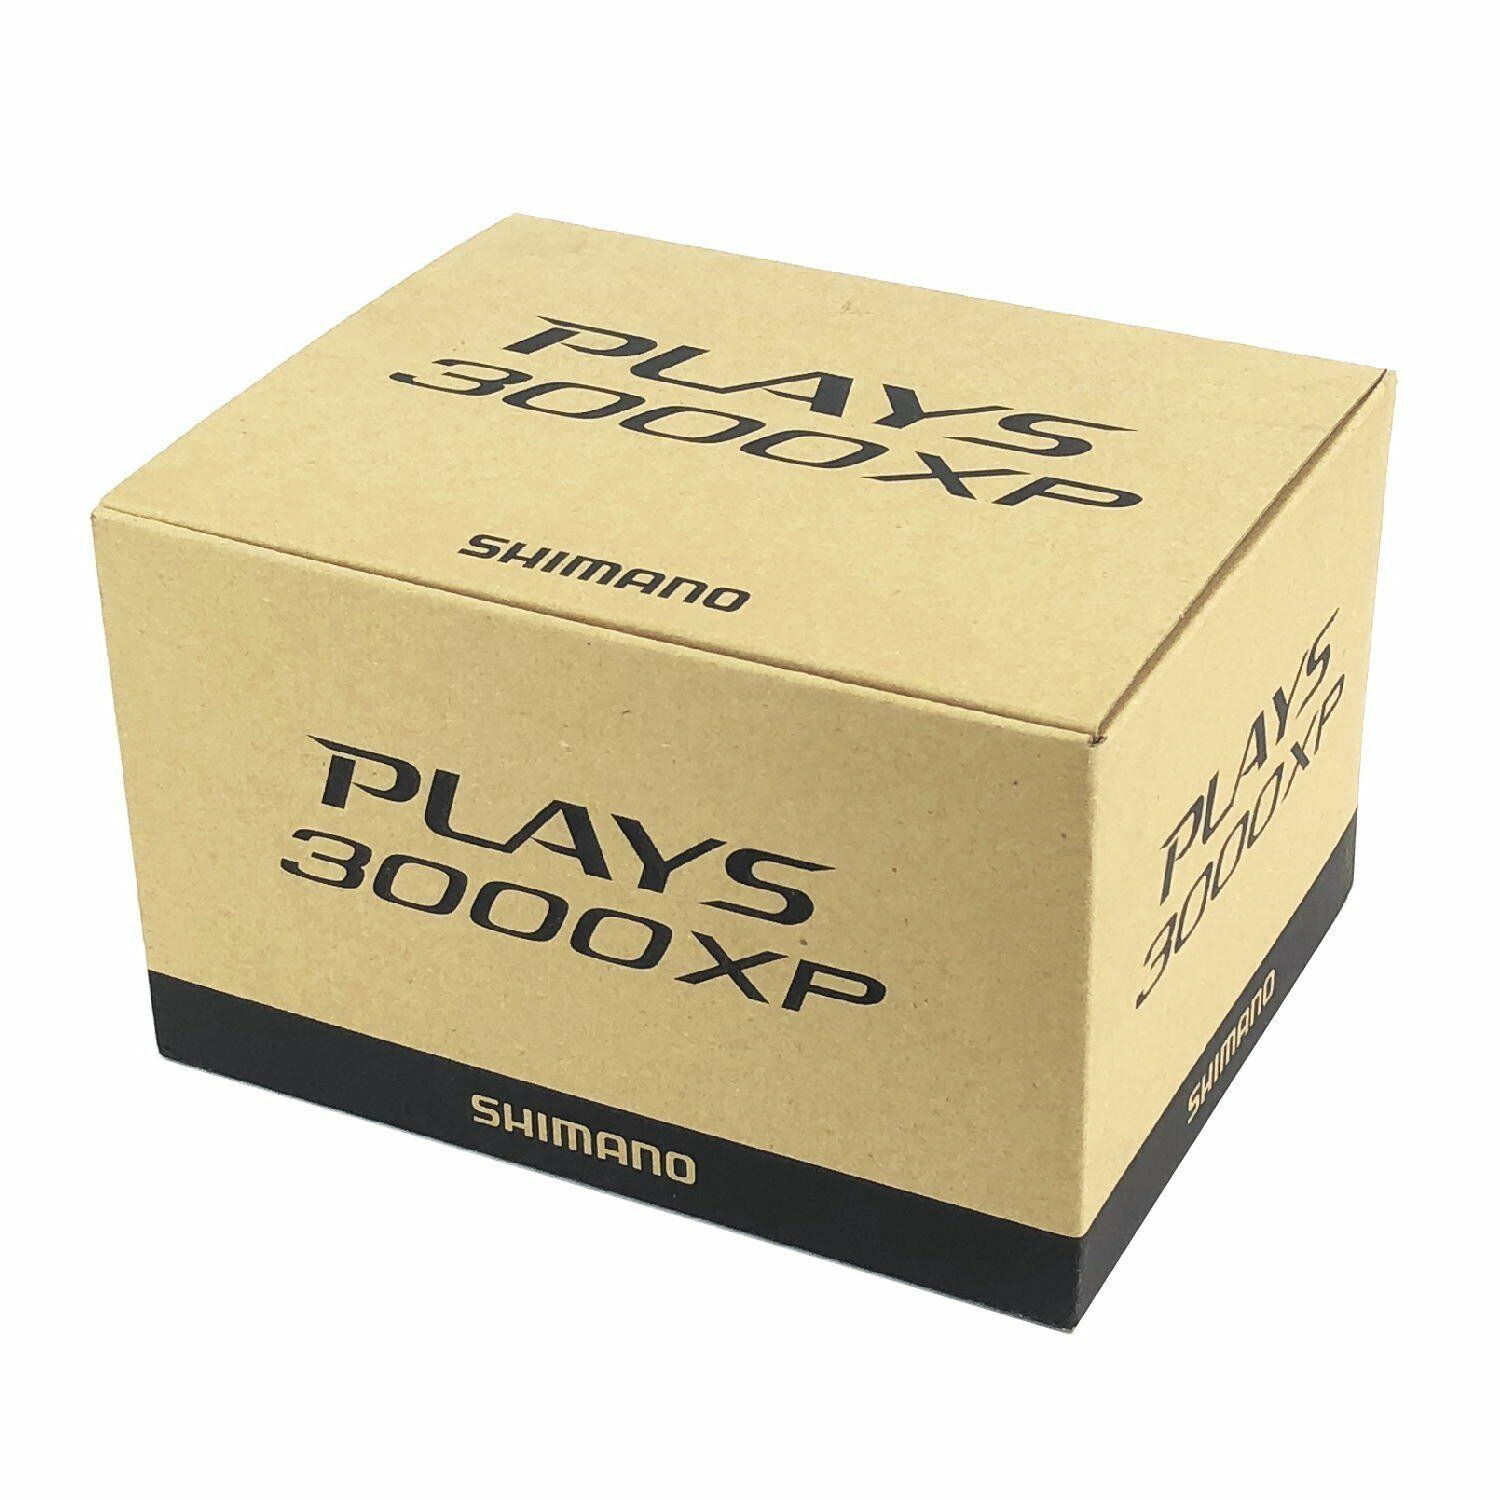 SHIMANO PLAYS 3000XP - リール